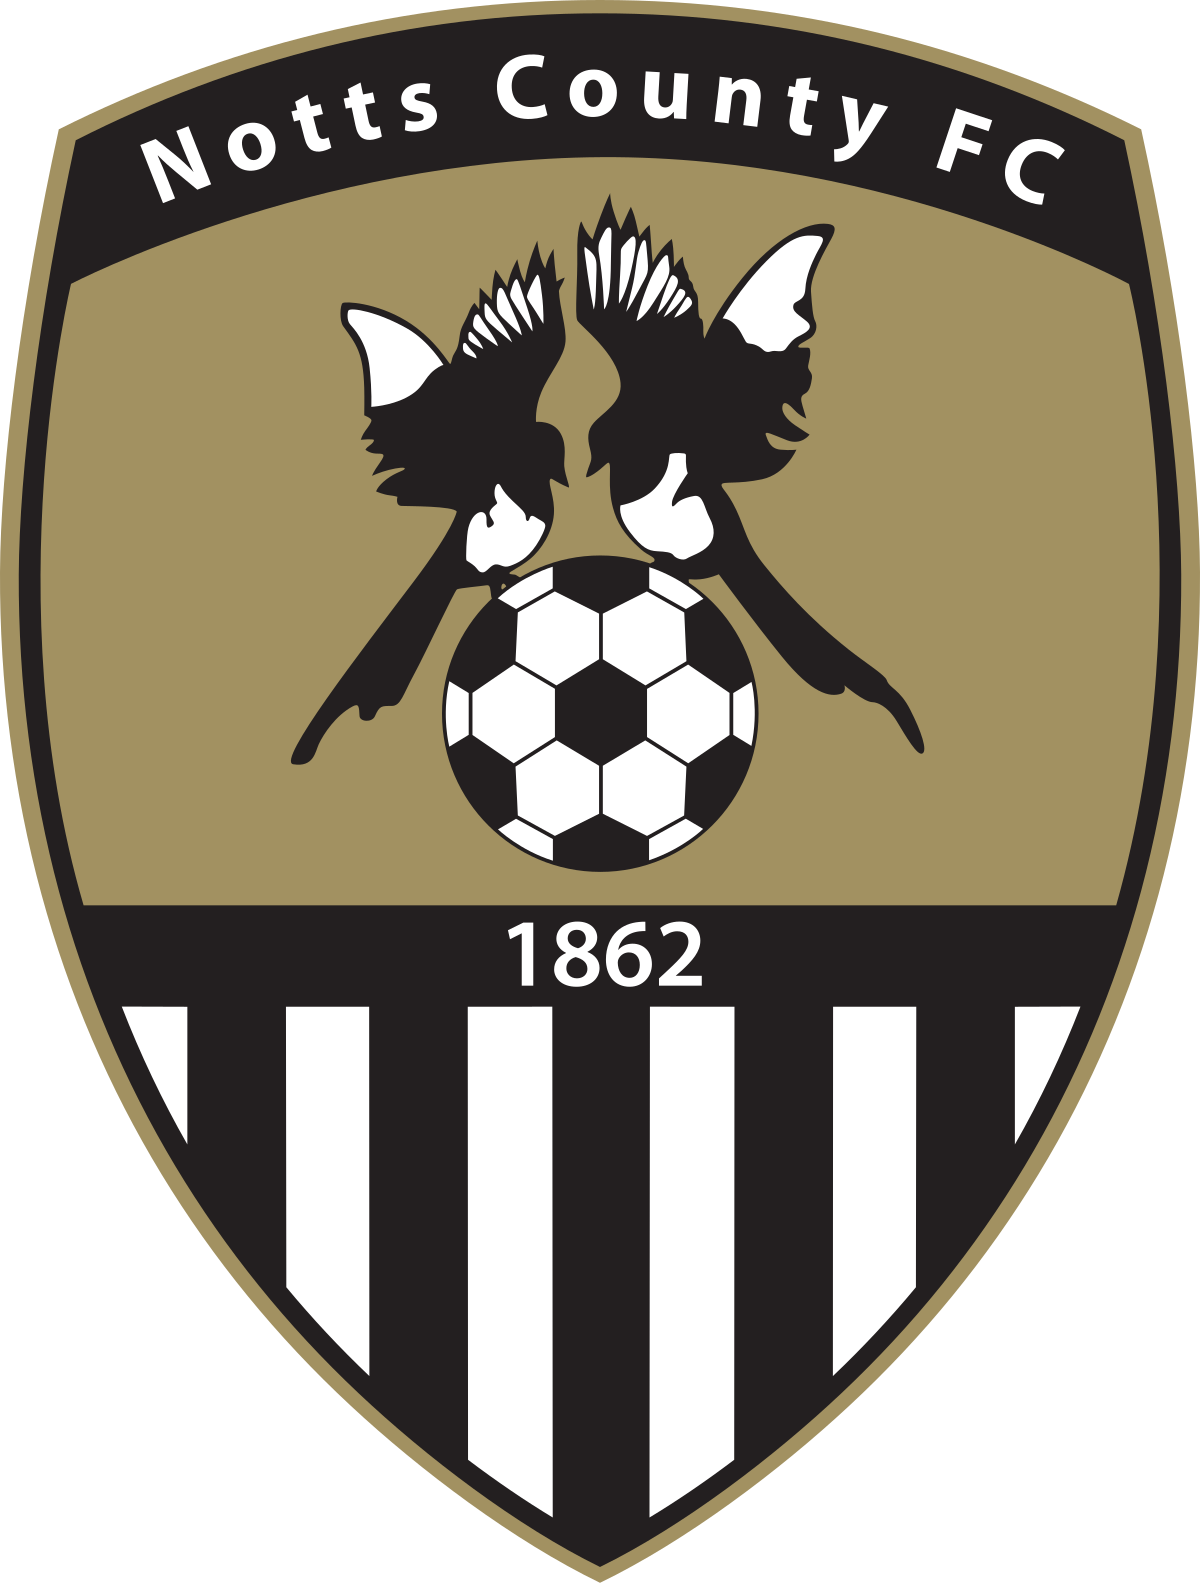 Notts County FC - Wikipedia